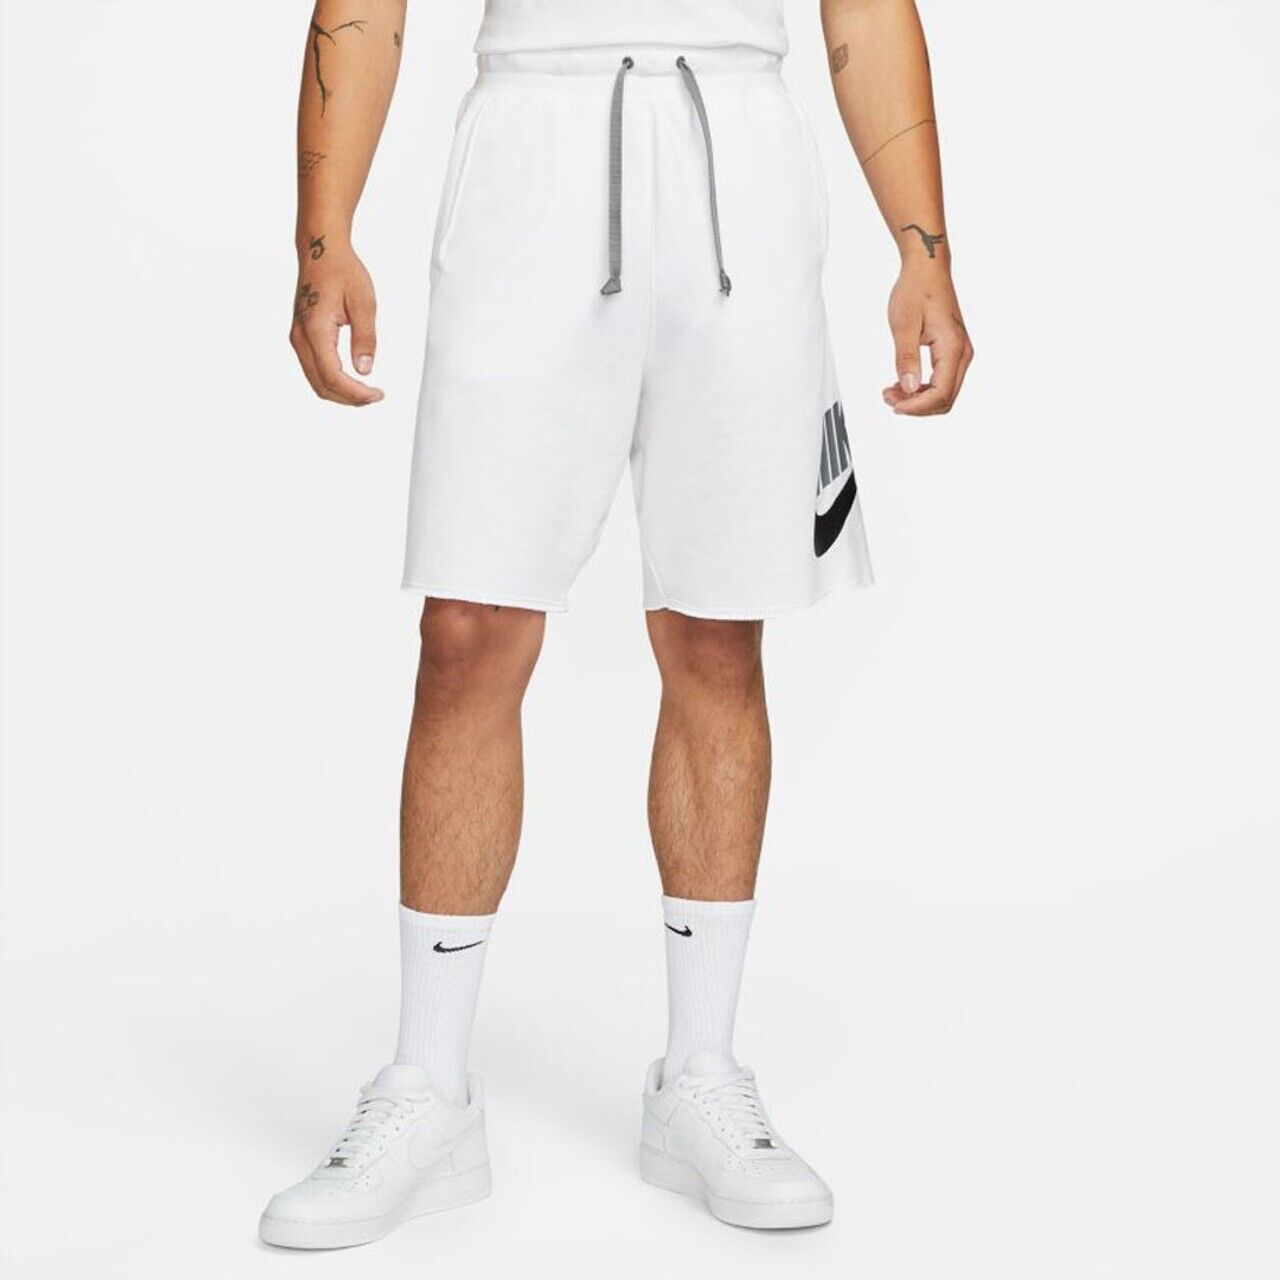 Спортивные шорты мужские Nike Spe Ft Alumni Short DM6817-100 белые M